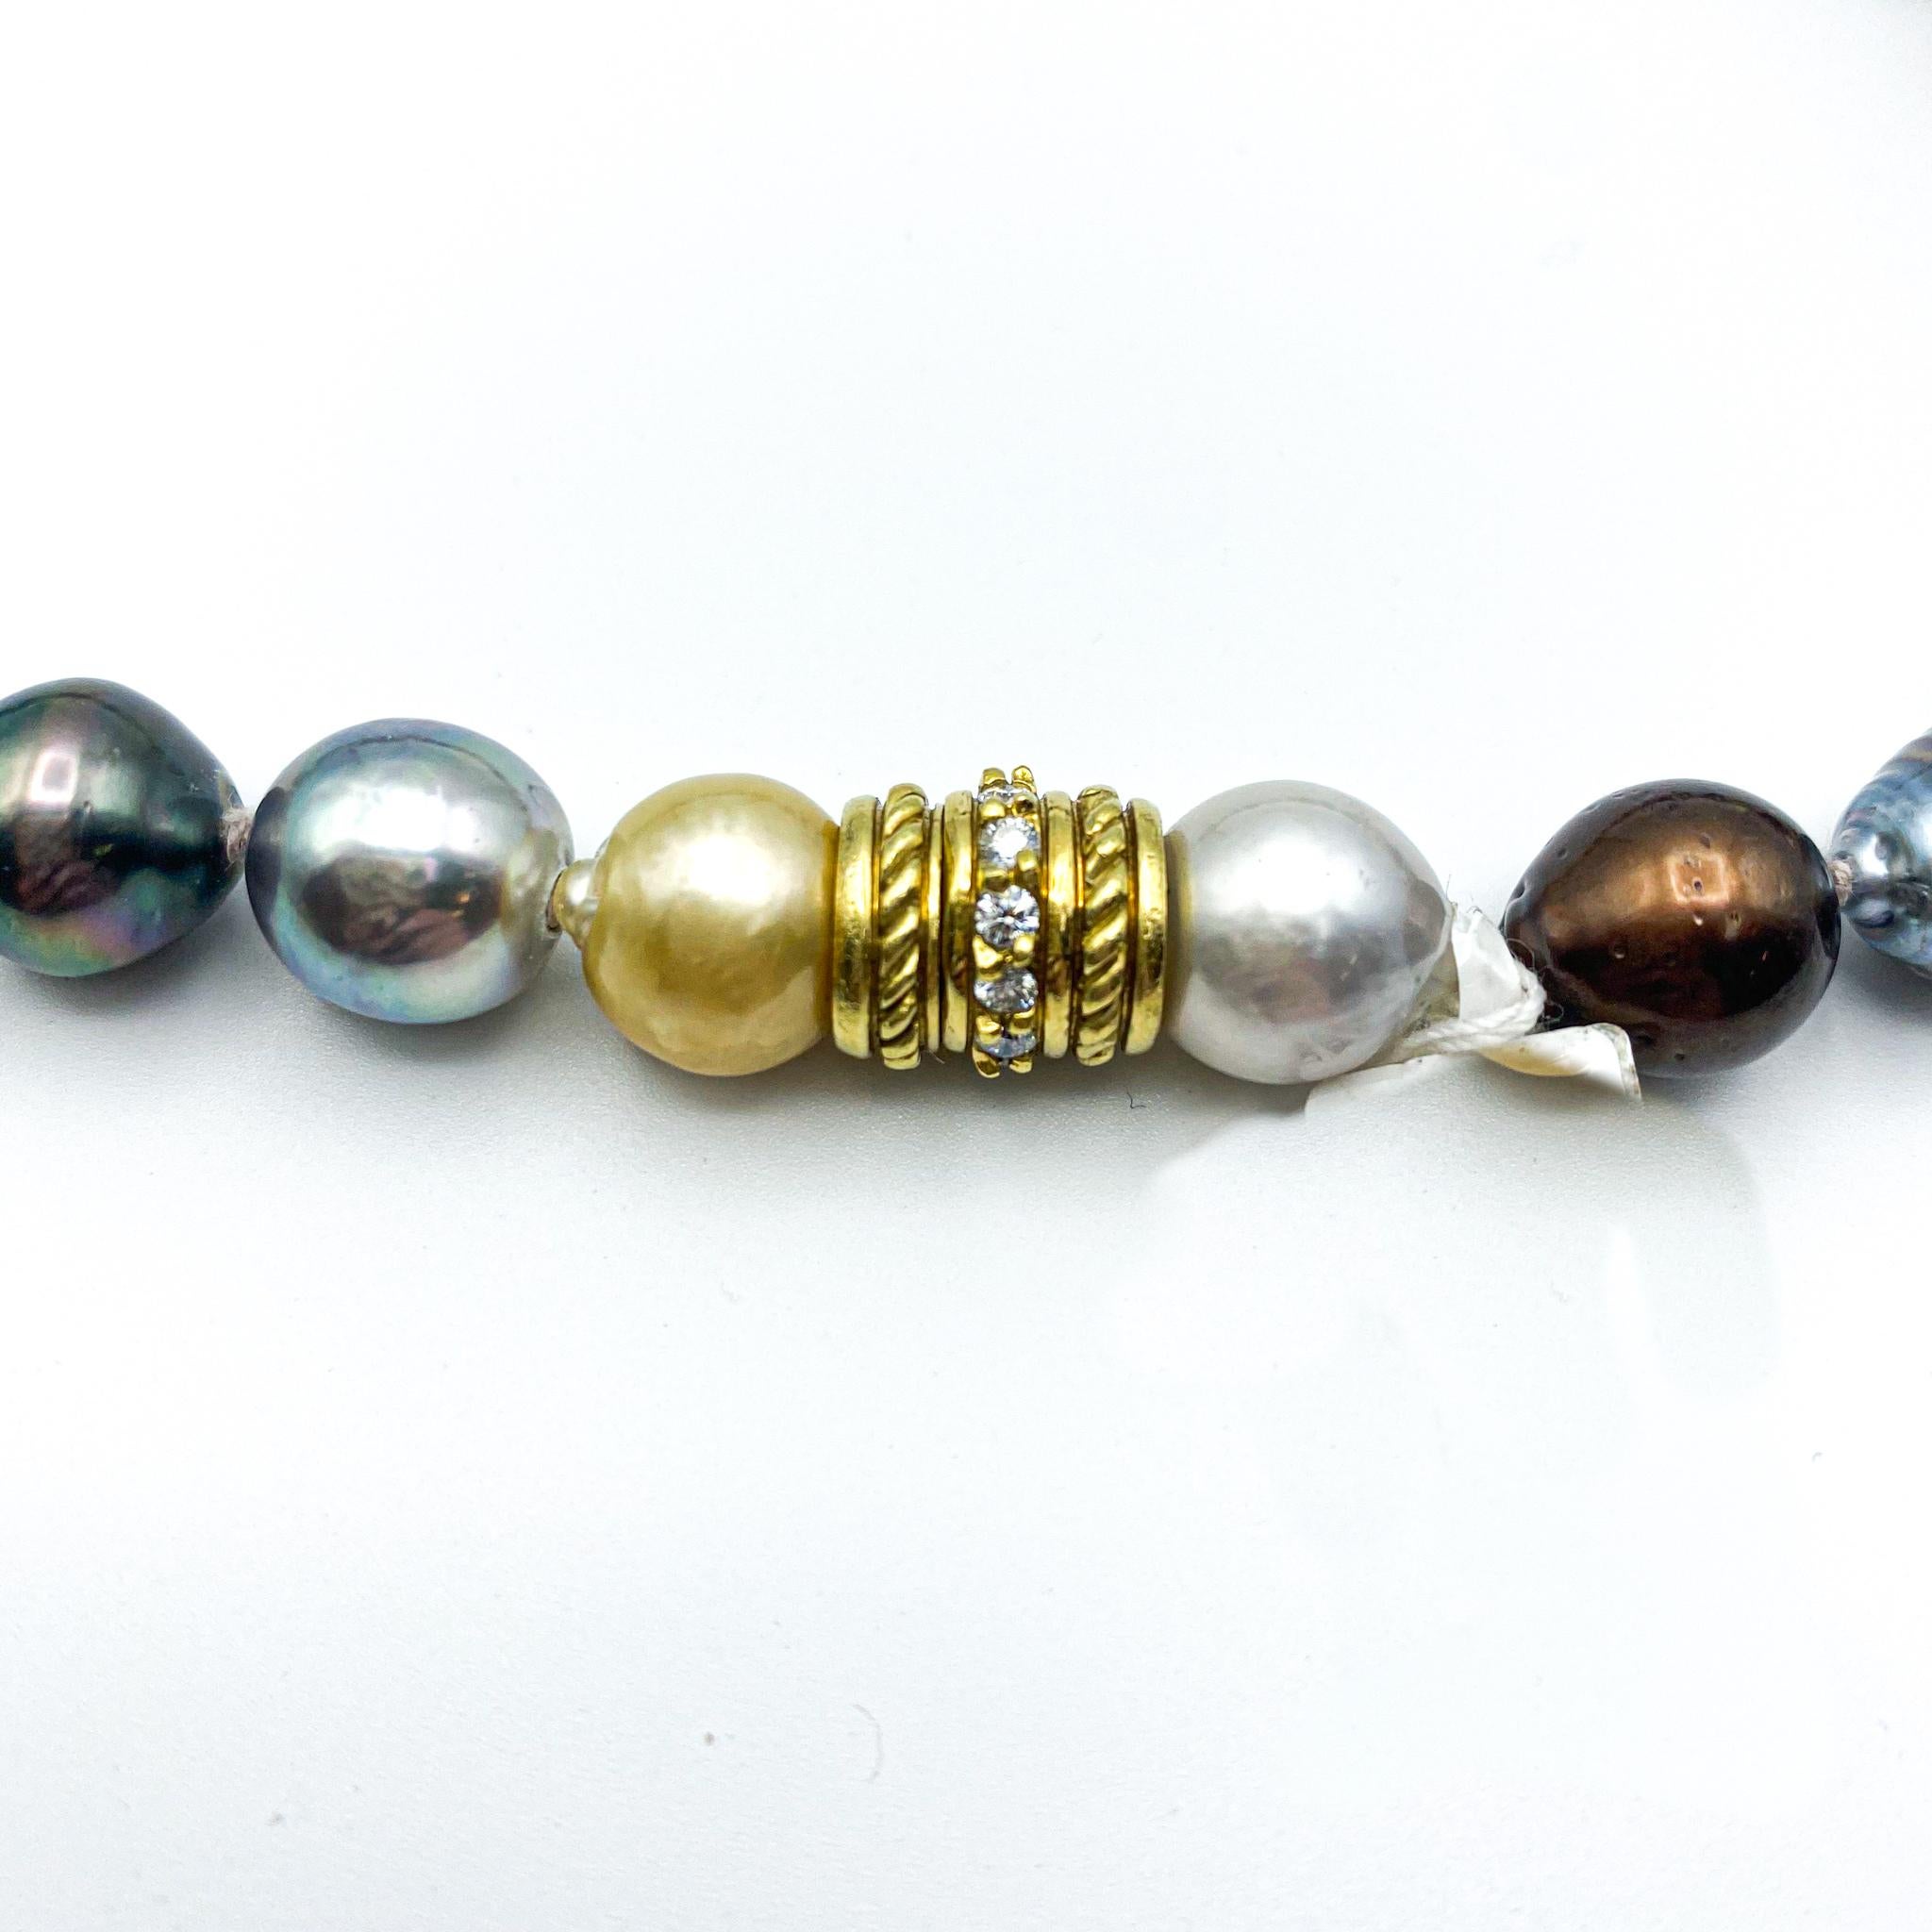 Natürliche Multicolor Tahiti-Perlen

Perlen Größe: 11-15 milimitters

Länge: 17 Zoll

Inklusive Schmuck-Geschenkbox